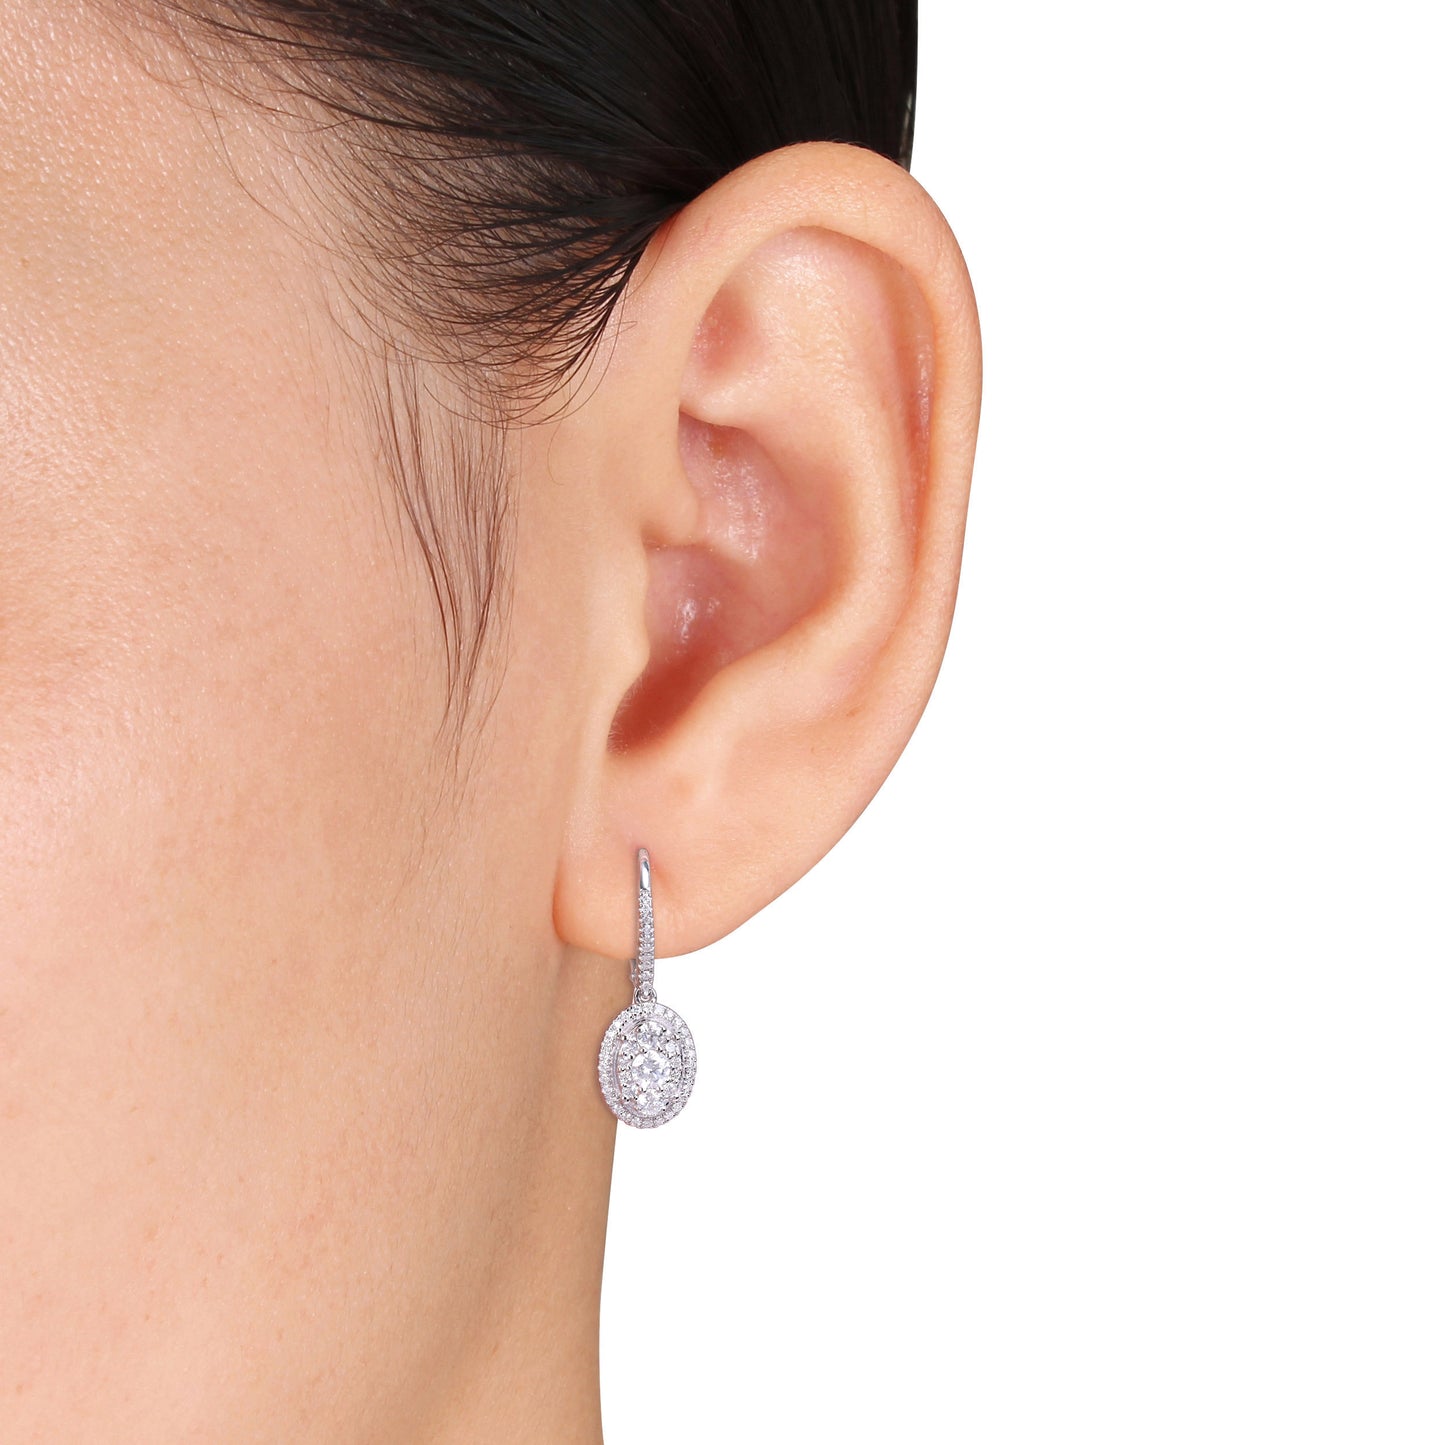 Oval Halo Diamond Earrings in 10k White Gold